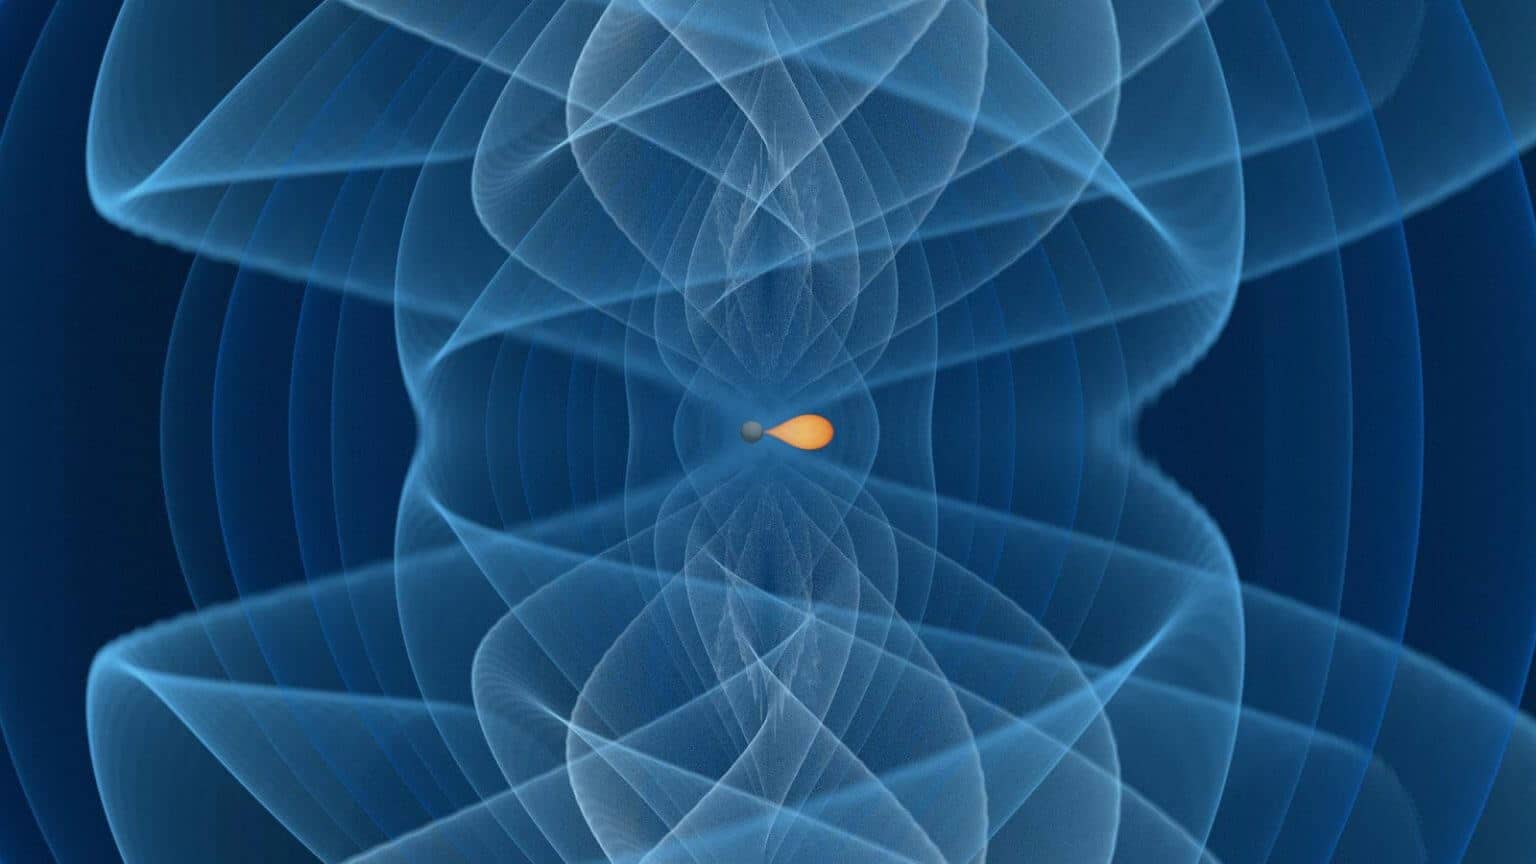 התמונה מראה את המיזוג של חור שחור מתחתית פער המסות (פני שטח באפור כהה) עם כוכב נייטרונים עם צבעים שנעים מכתום כהה (מיליון טונות לסמ"ק) ללבן (600 מיליון טונות לסמ"ק). את האות של גל הכבידה מייצגת סדרה של ערכי אמפליטודות עיבור של קיטוב חיובי  באמצעות צבעים מכחול כהה עד ציאן. קרדיט: I. Markin (Potsdam University), T. Dietrich (Potsdam University and Max Planck Institute for Gravitational Physics), H. Pfeiffer, A. Buonanno (Max Planck Institute for Gravitational Physics)